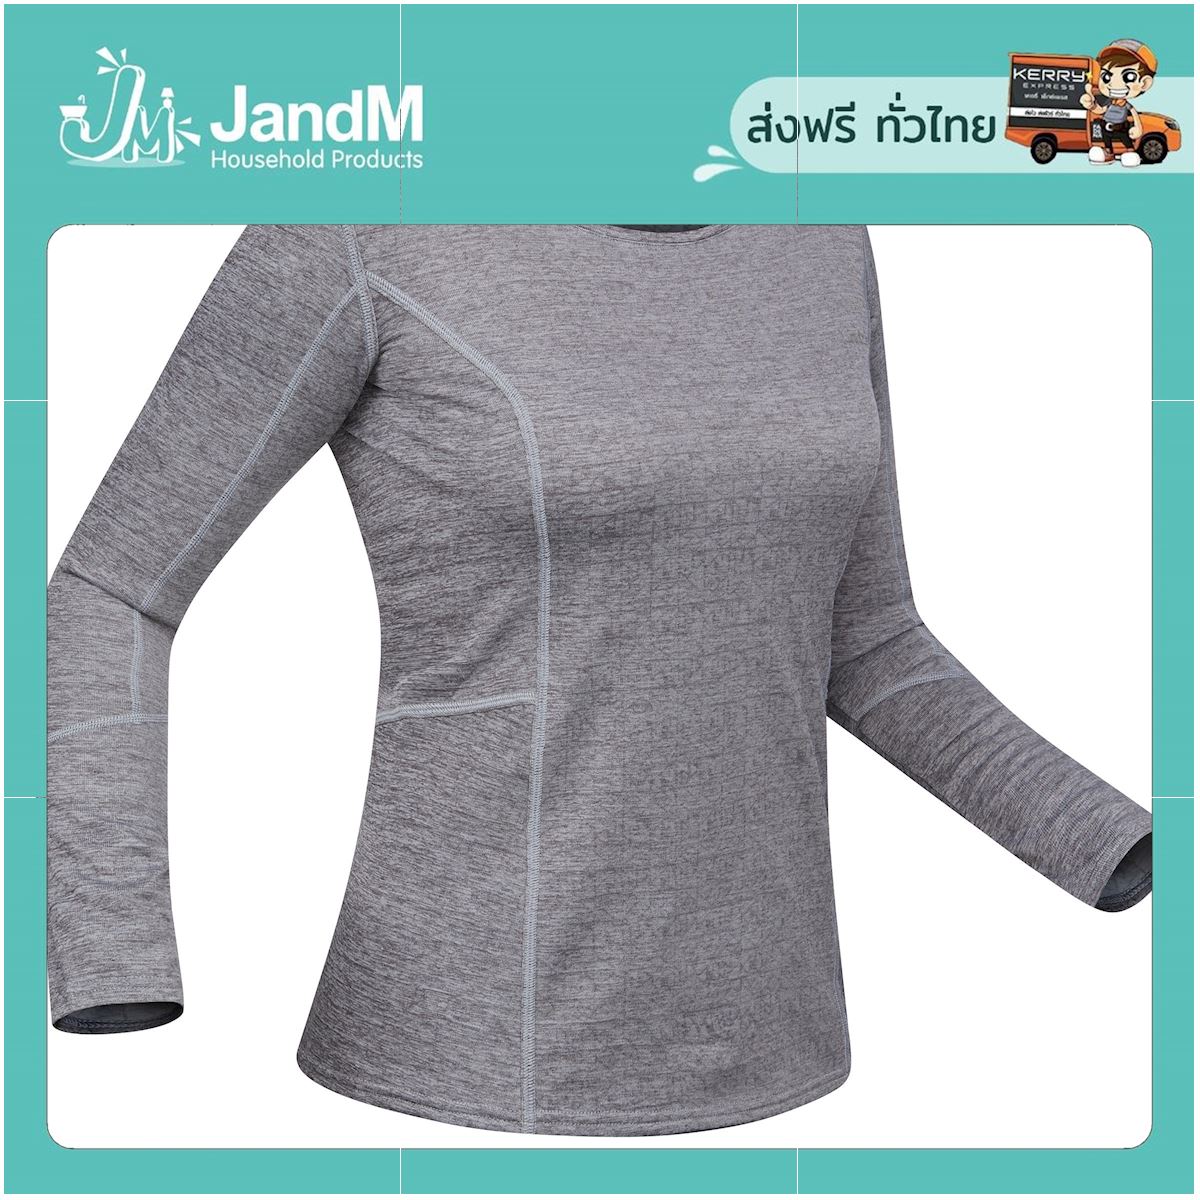 JandM เสื้อตัวในผู้หญิงสำหรับใส่เล่นสกีรุ่น 500 (สีเทา) ส่งkerry มีเก็บเงินปลายทาง